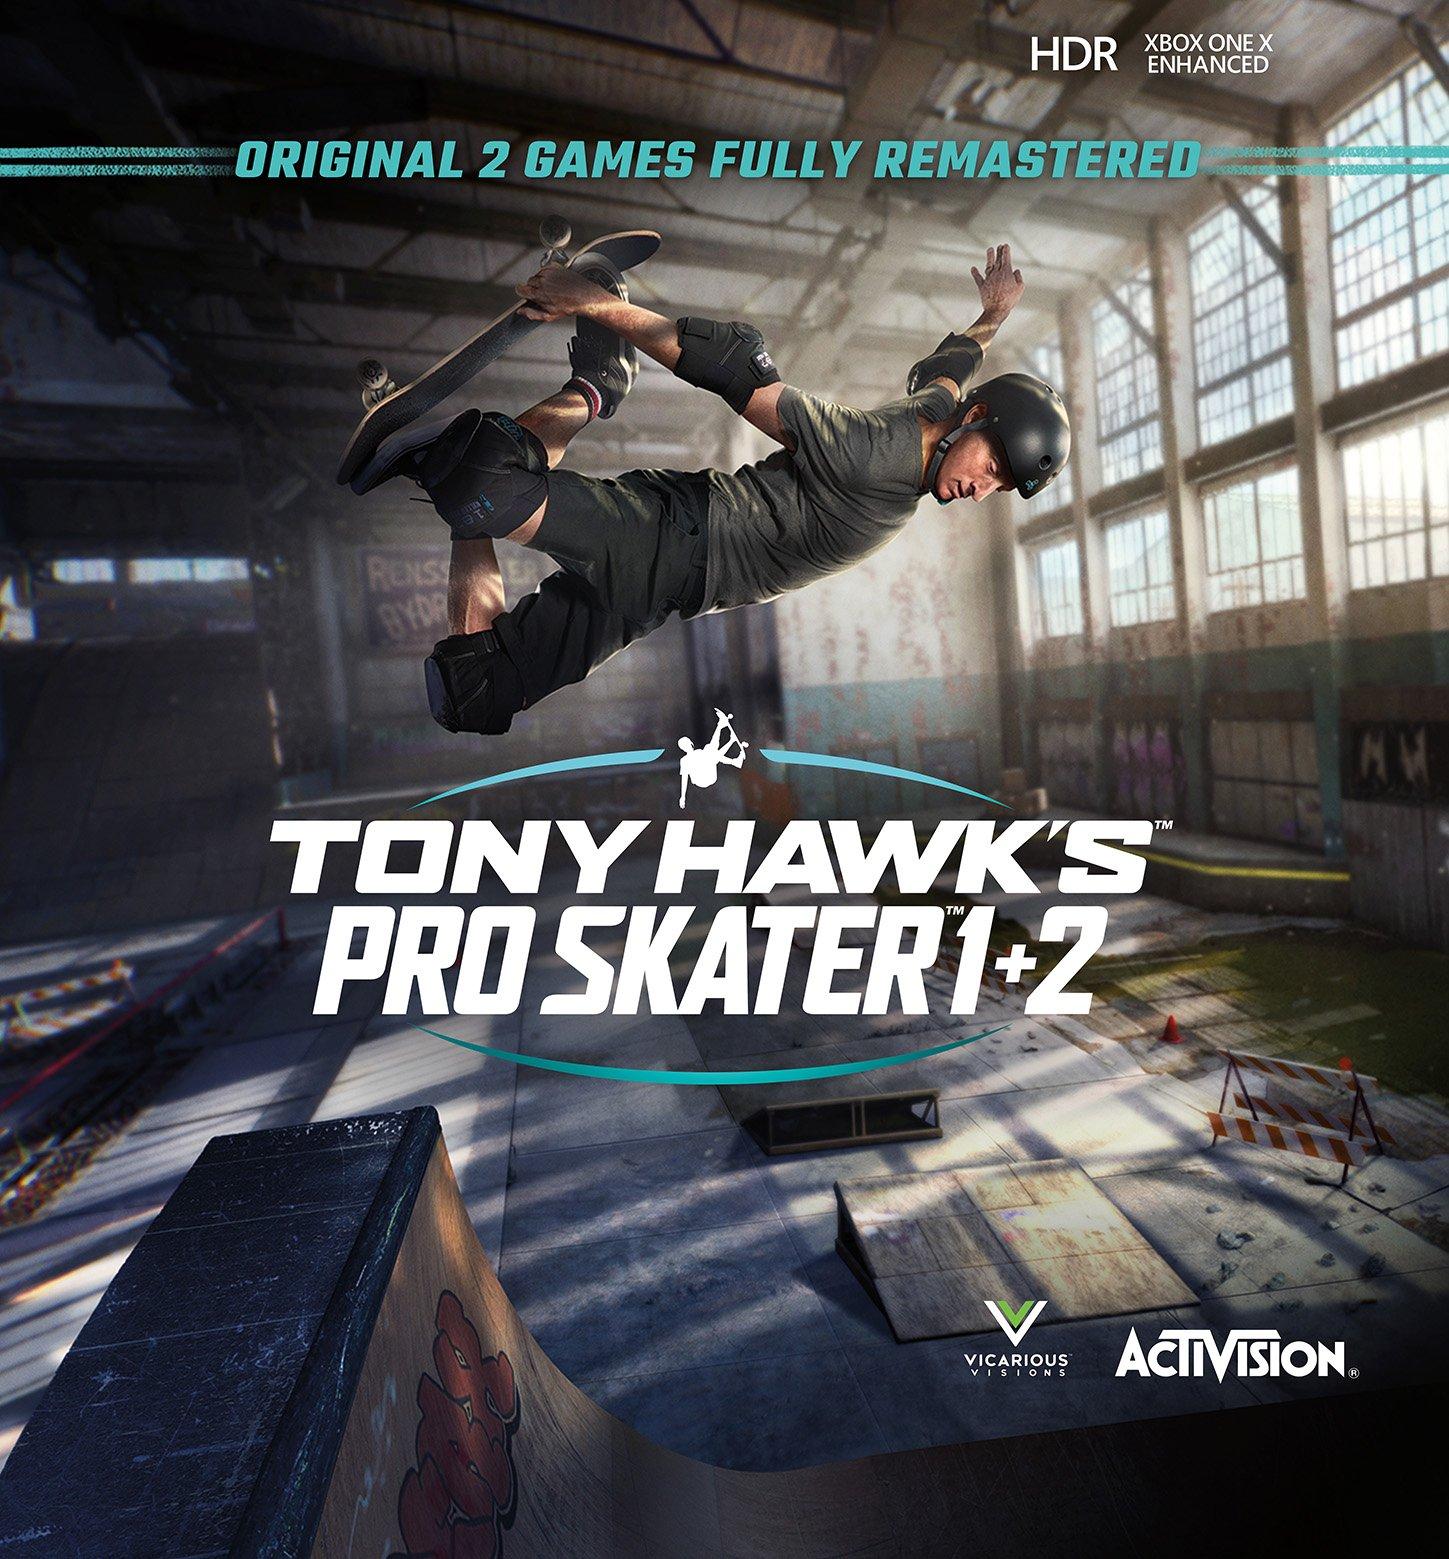 play tony hawk pro skater 2 on ps4